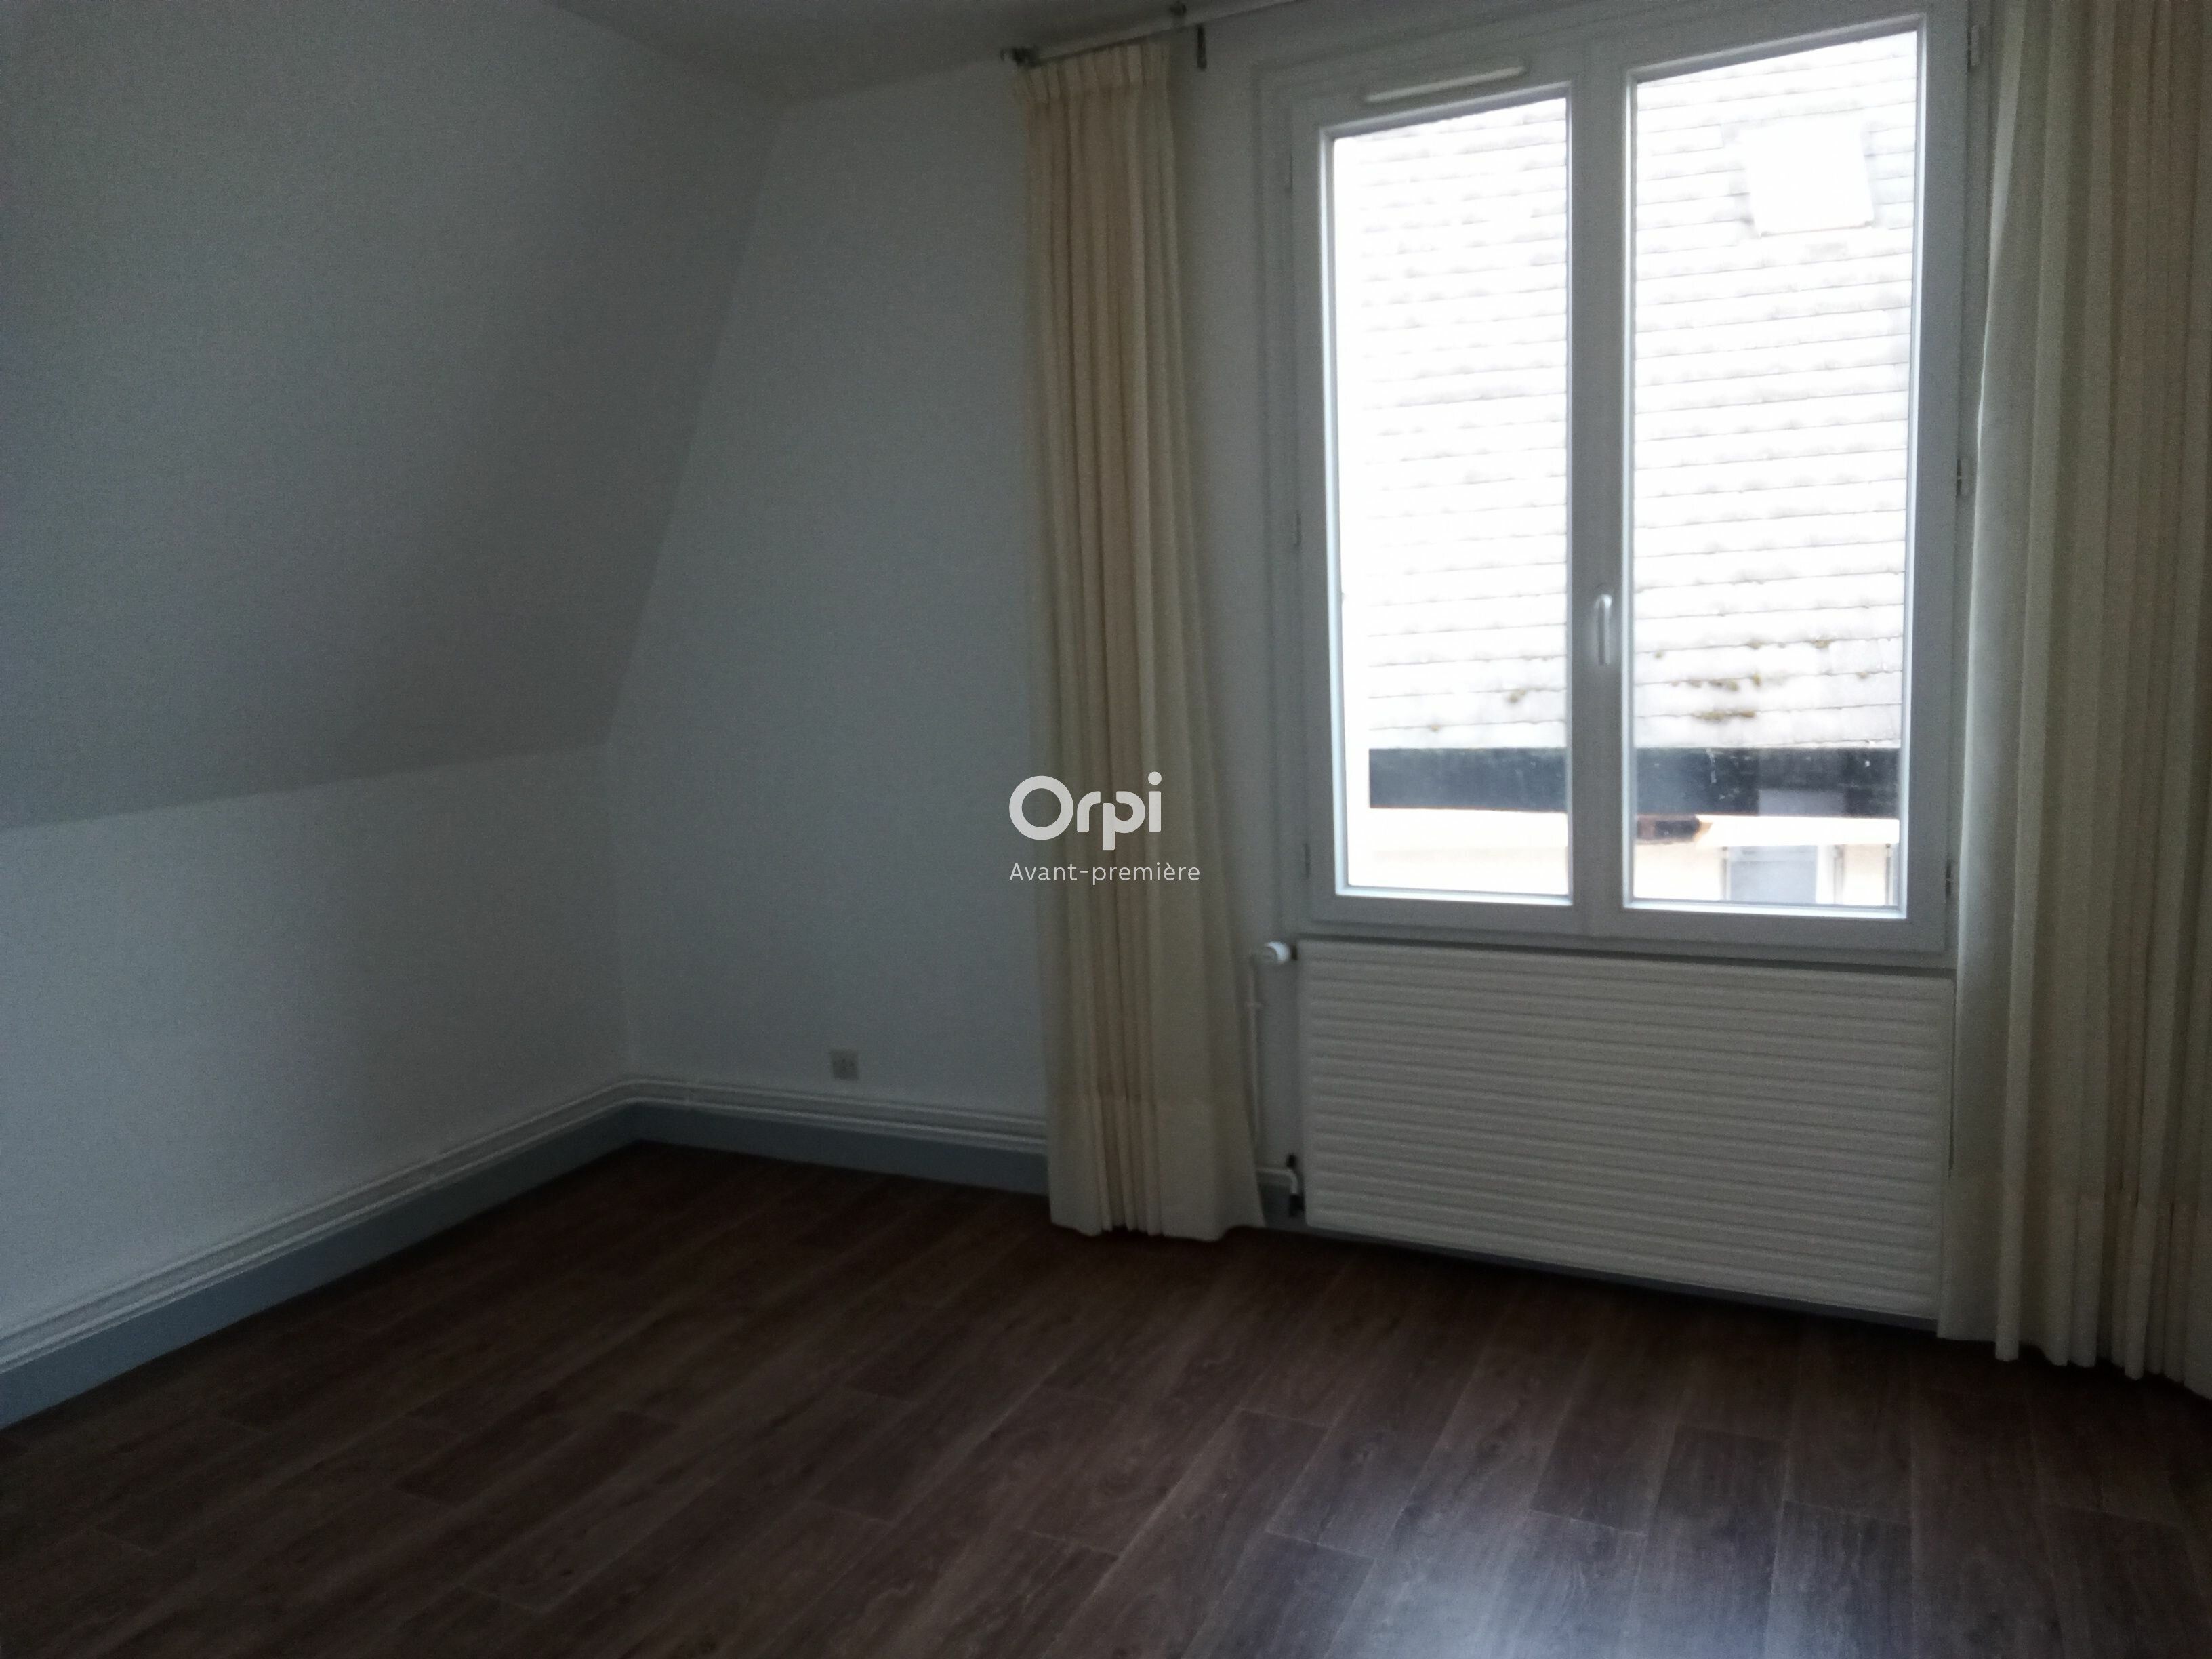 Appartement à vendre 3 68.89m2 à Bourges vignette-3